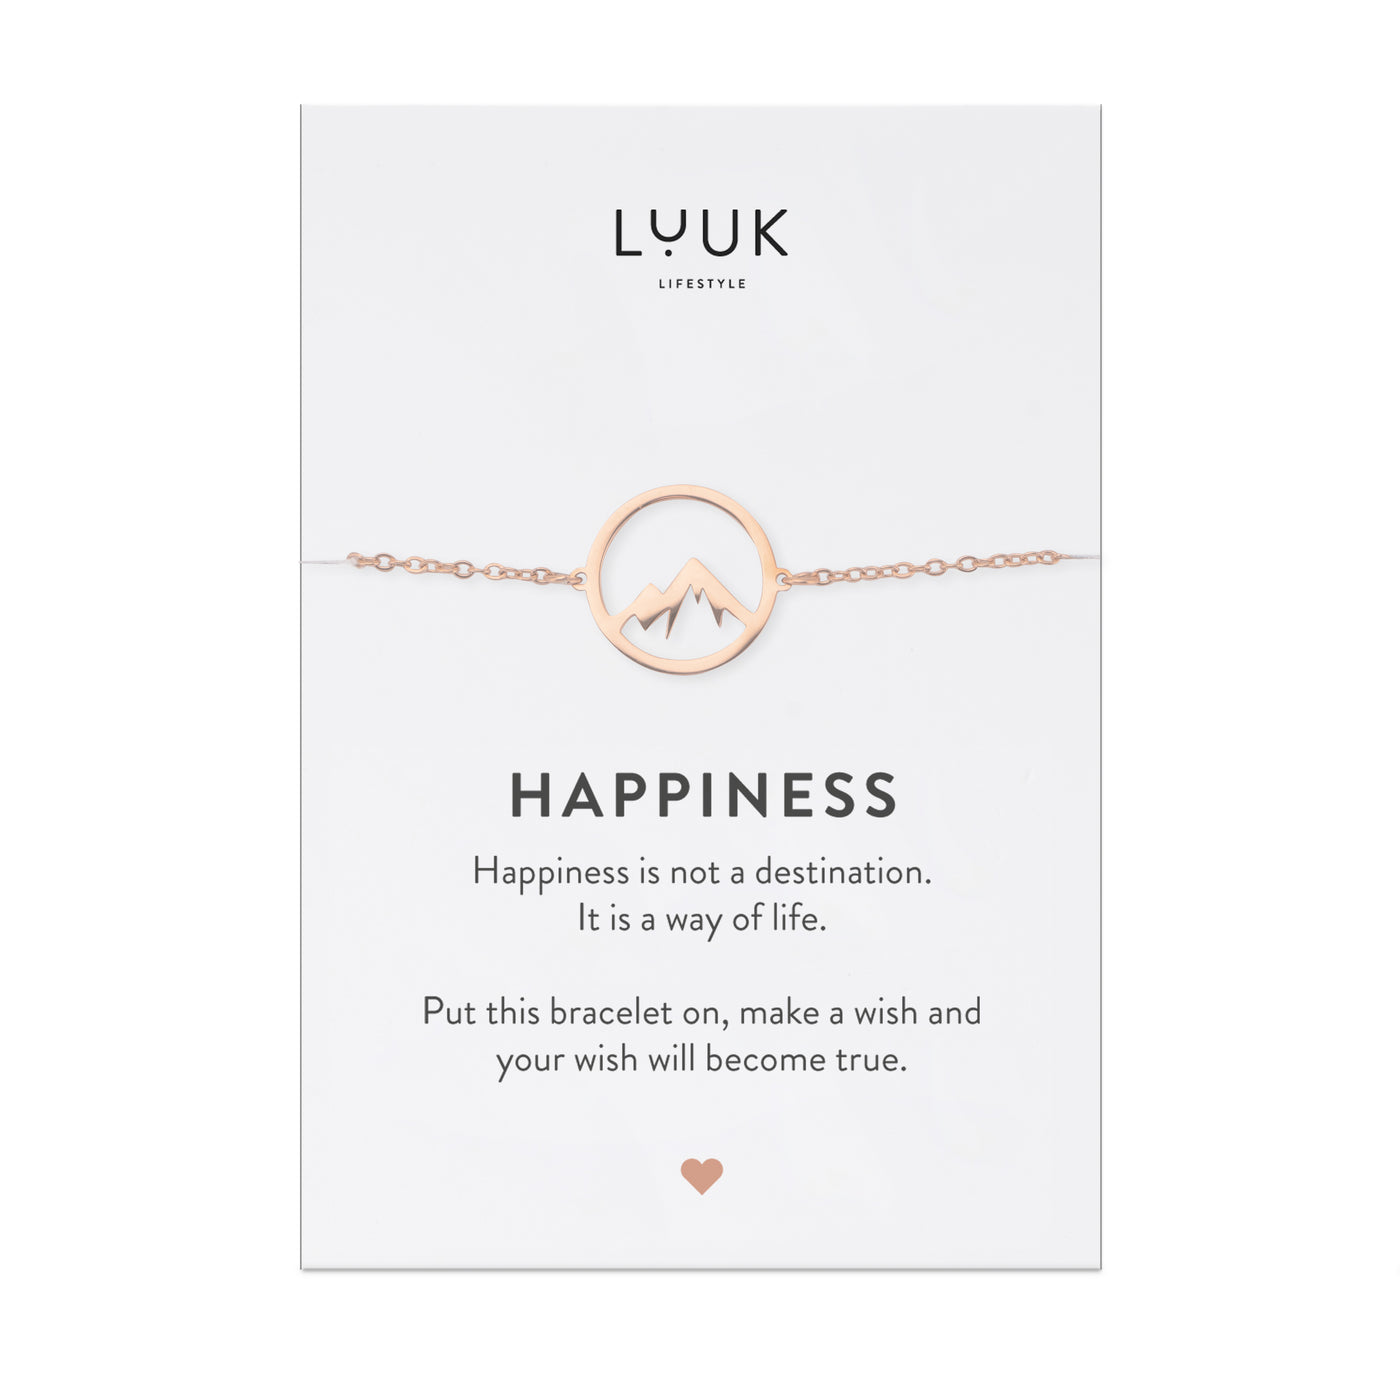 Rosegoldenes Armband mit Berg Anhänger auf Happiness Spruchkarte von der Marke Luuk Lifestyle